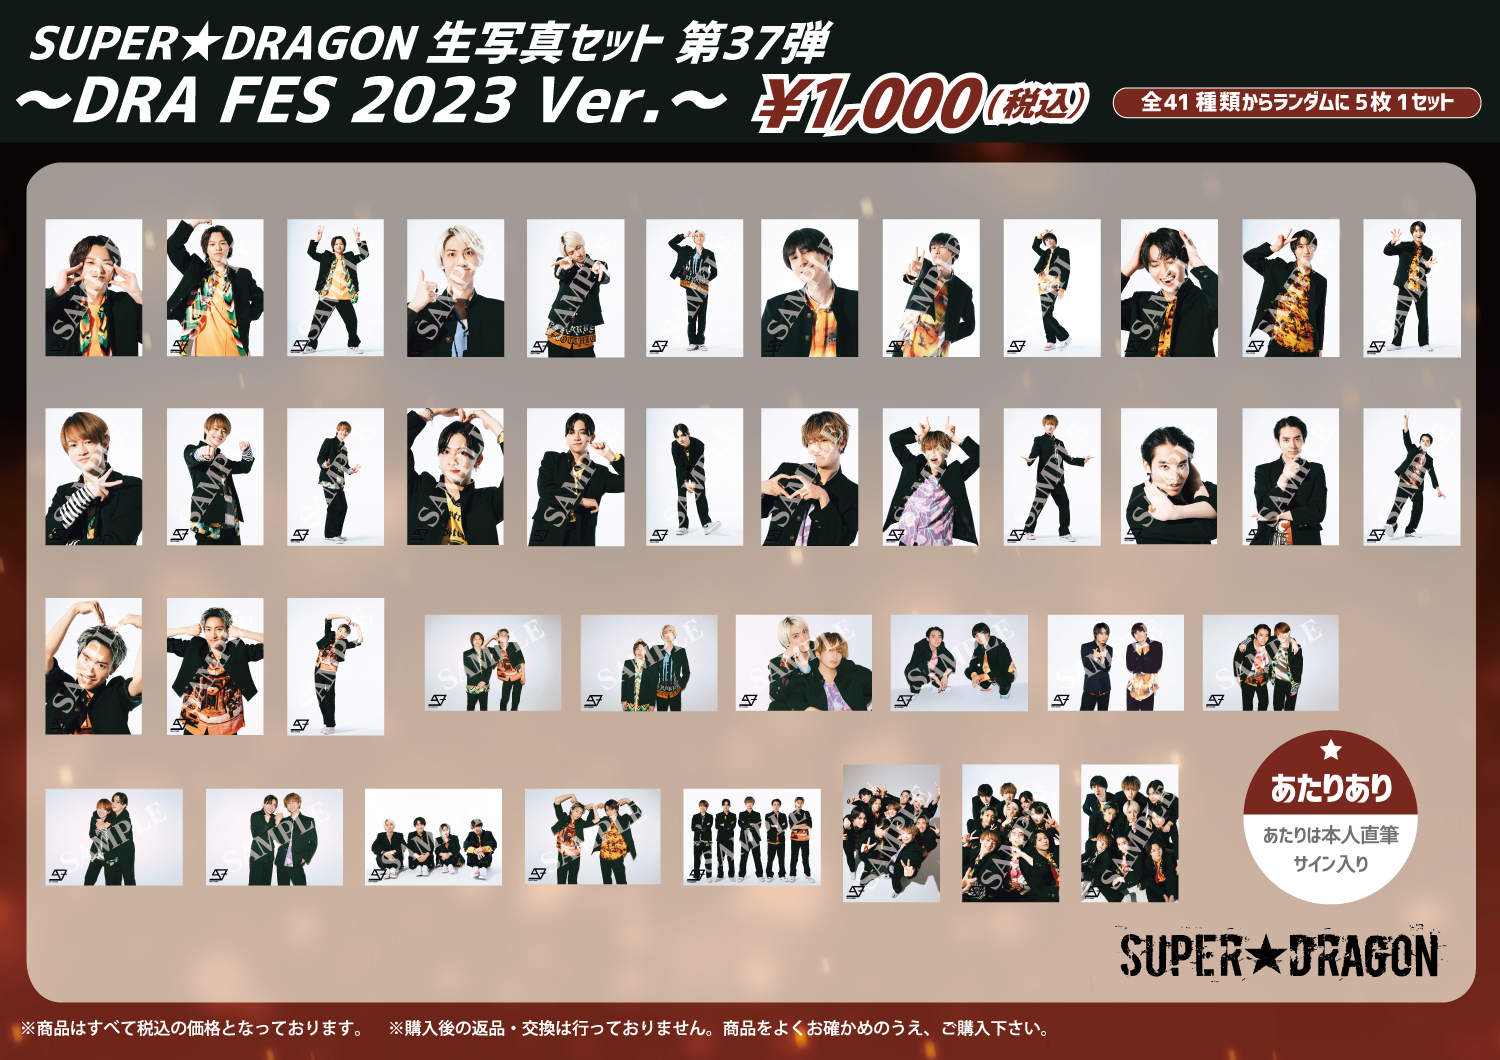 グッズ情報】「SUPER☆DRAGON DRA FES 2023」オフィシャルグッズ、生